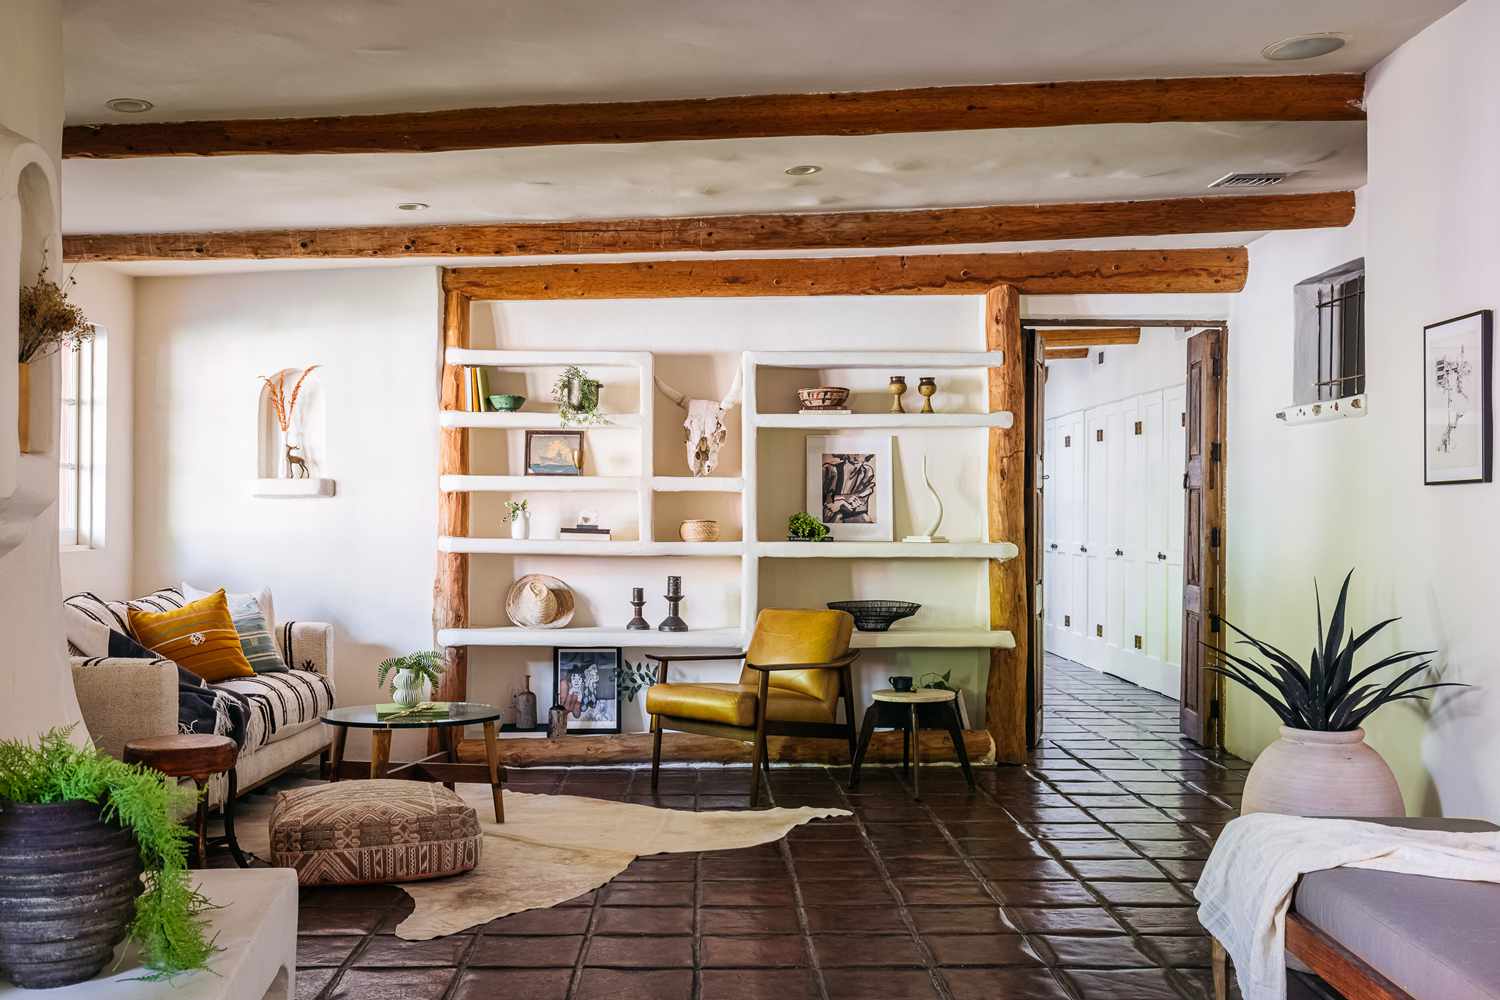 Sala de estar em estilo mediterrâneo com móveis estampados e paredes brancas com prateleiras abertas